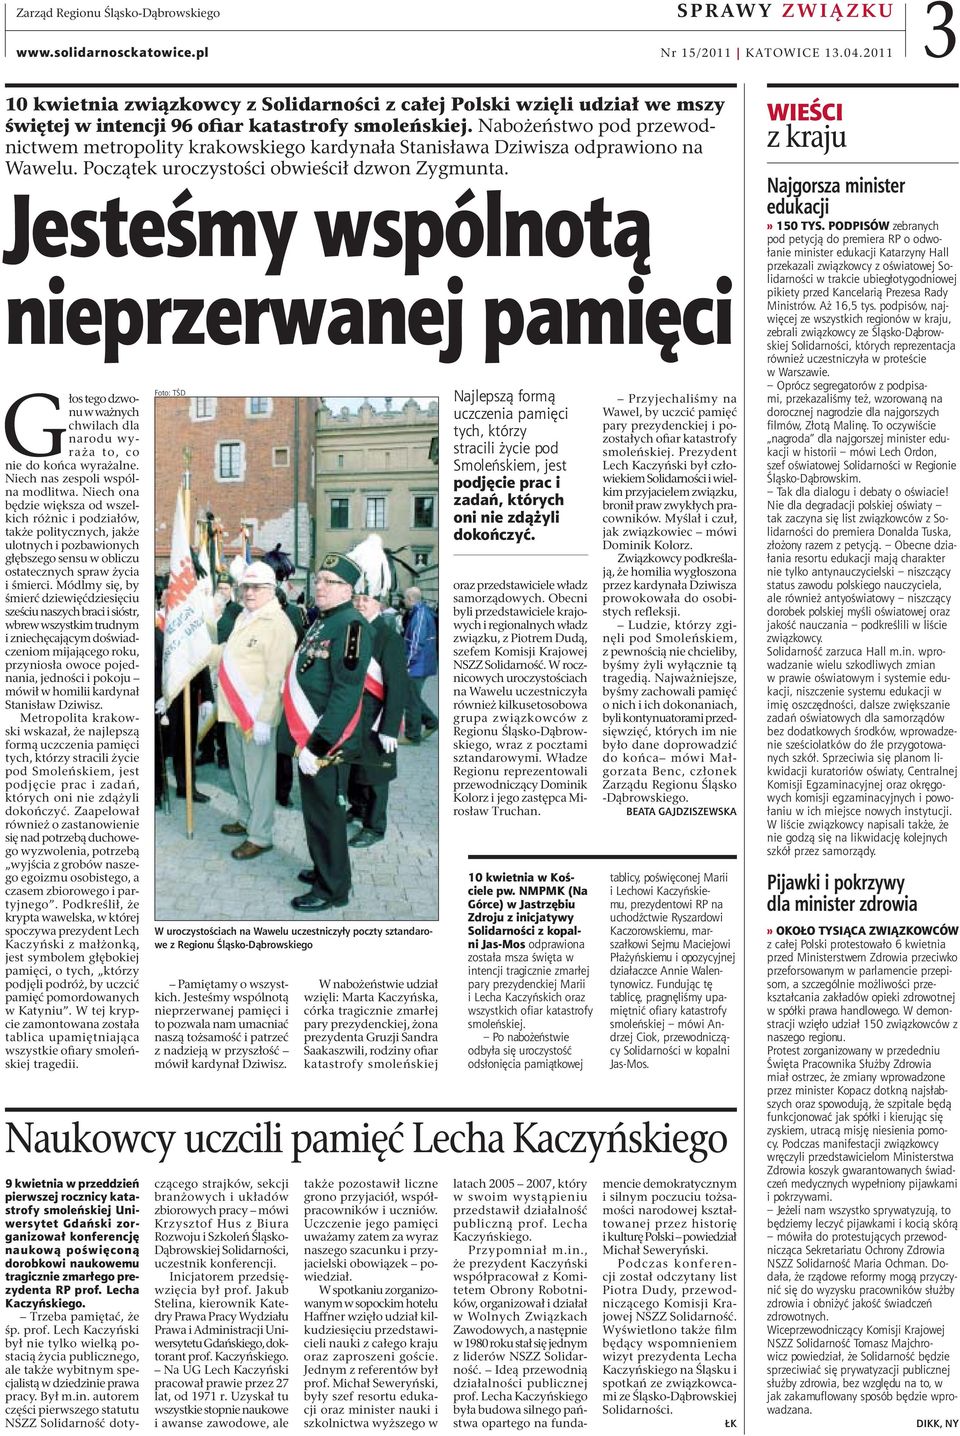 Nabożeństwo pod przewodnictwem metropolity krakowskiego kardynała Stanisława Dziwisza odprawiono na Wawelu. Początek uroczystości obwieścił dzwon Zygmunta.